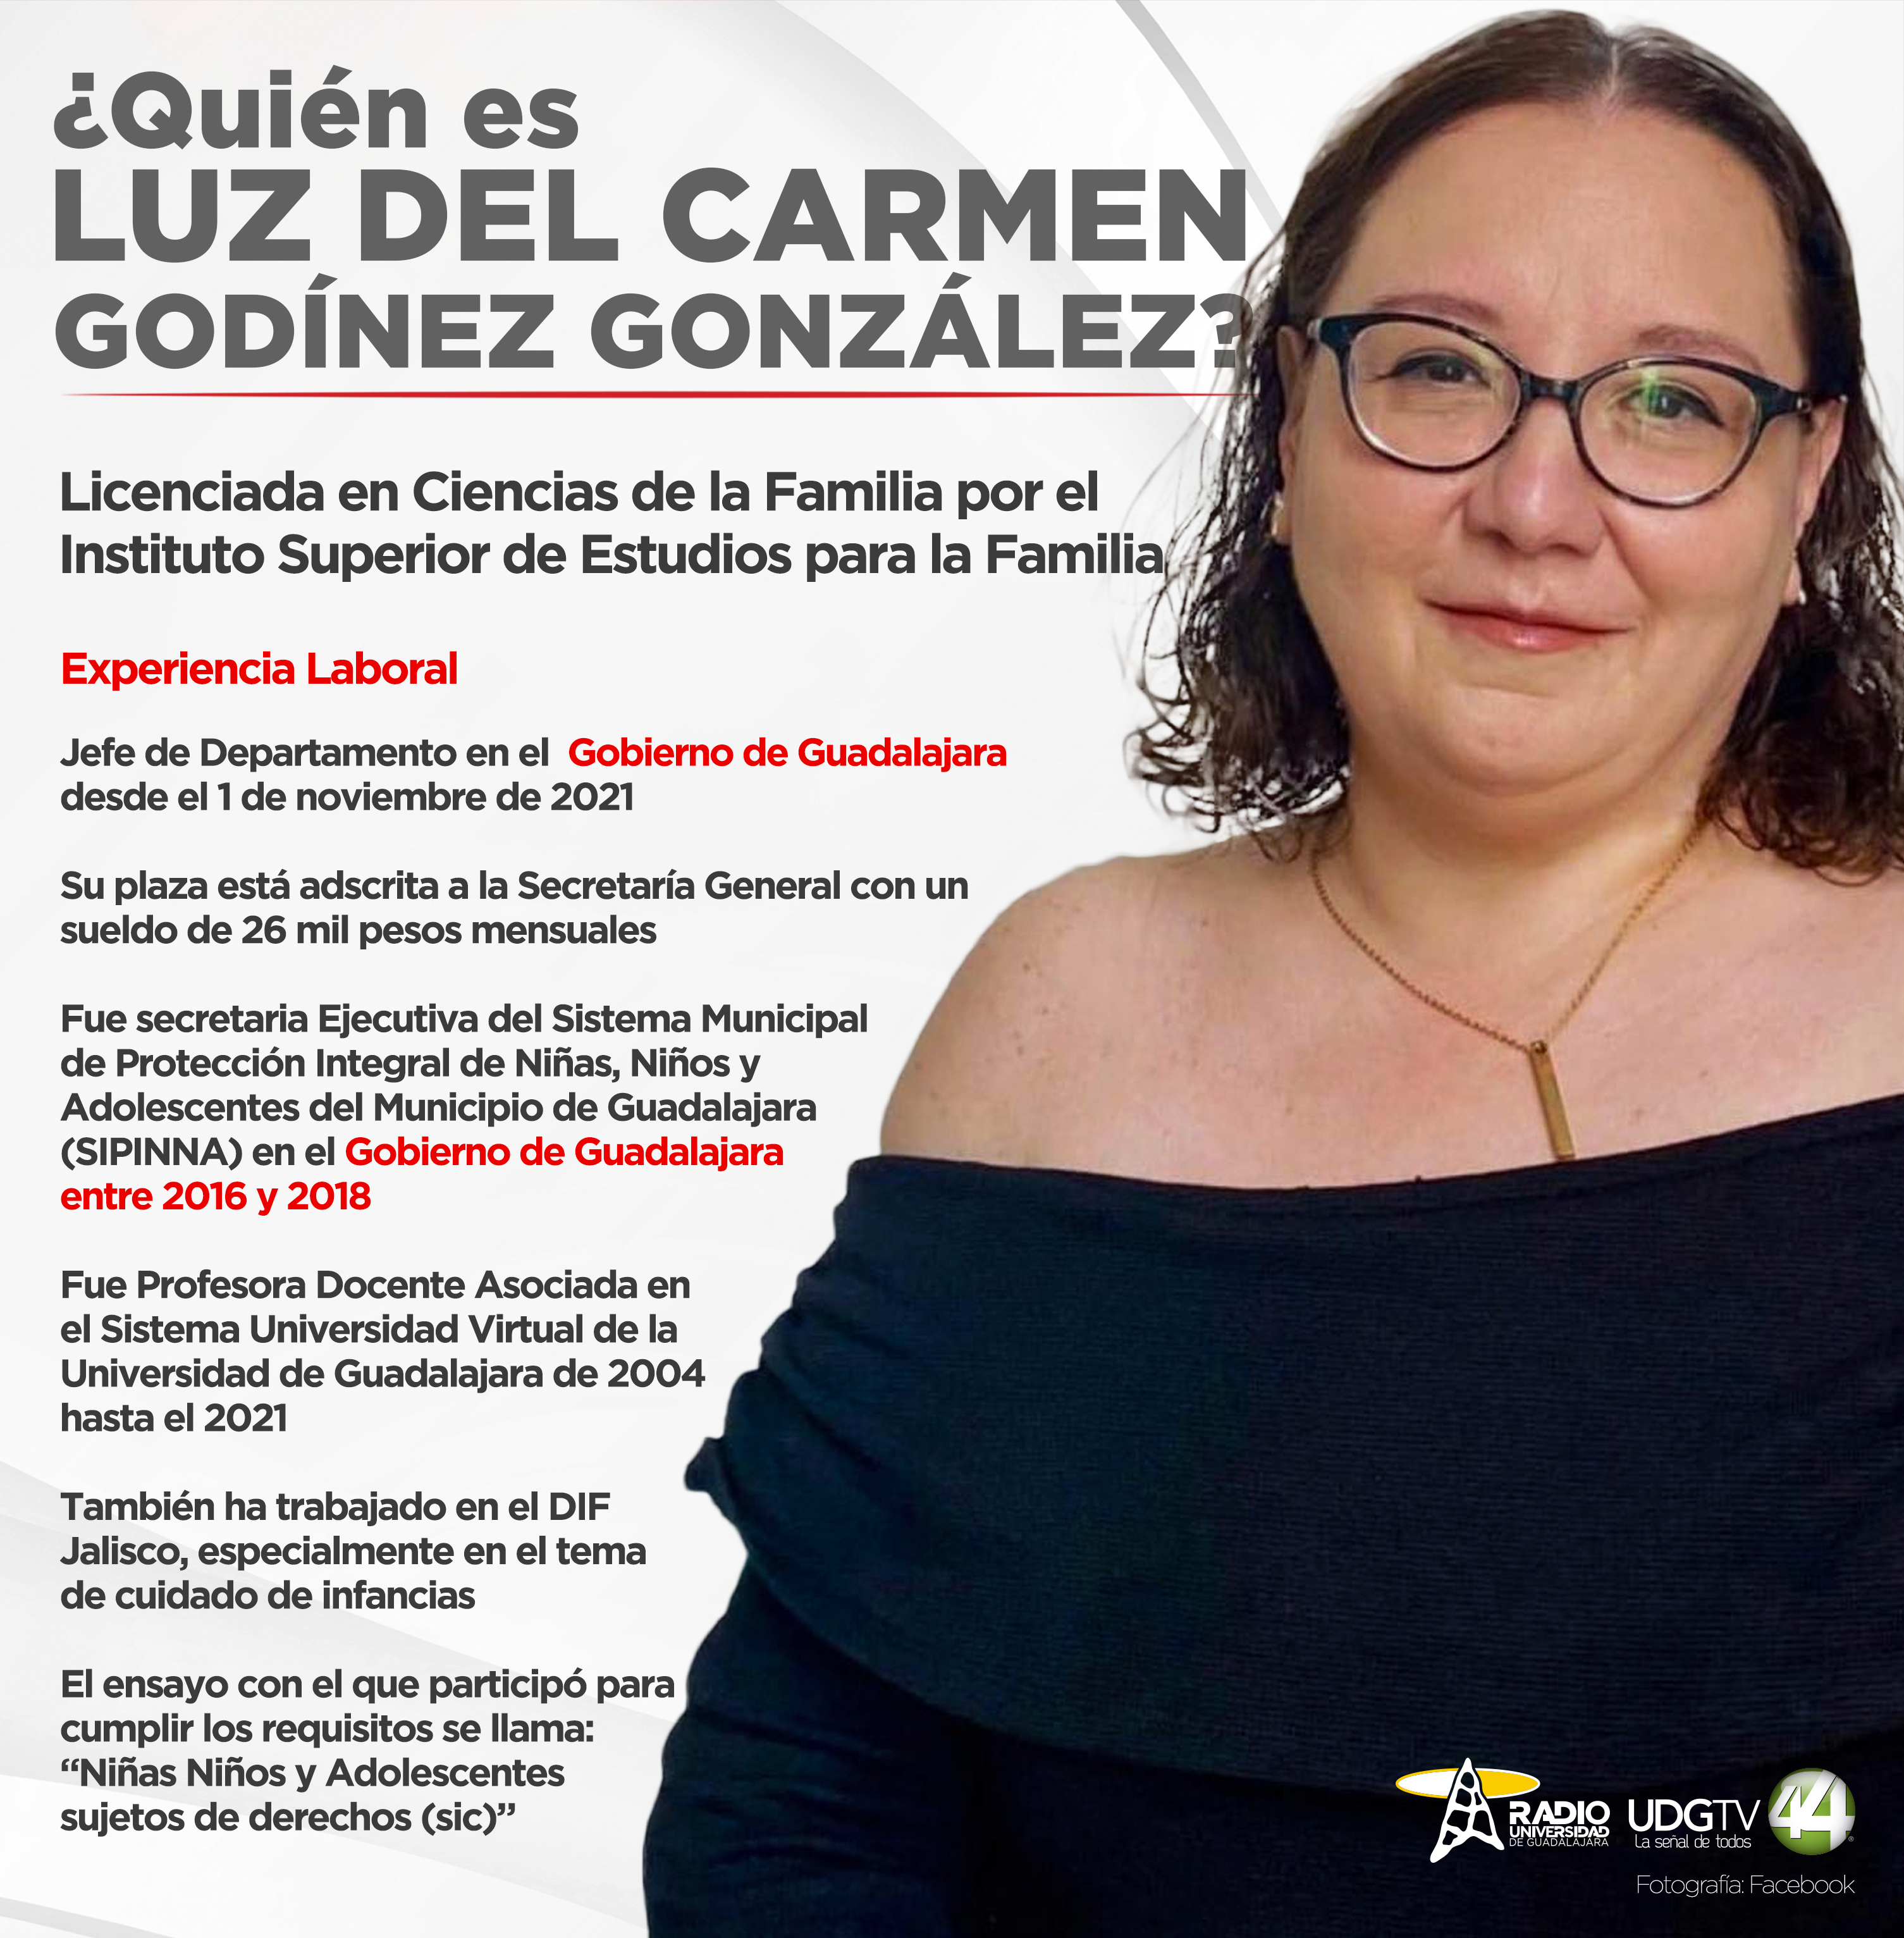 Luz del Carmen Godínez González Derechos Humanos